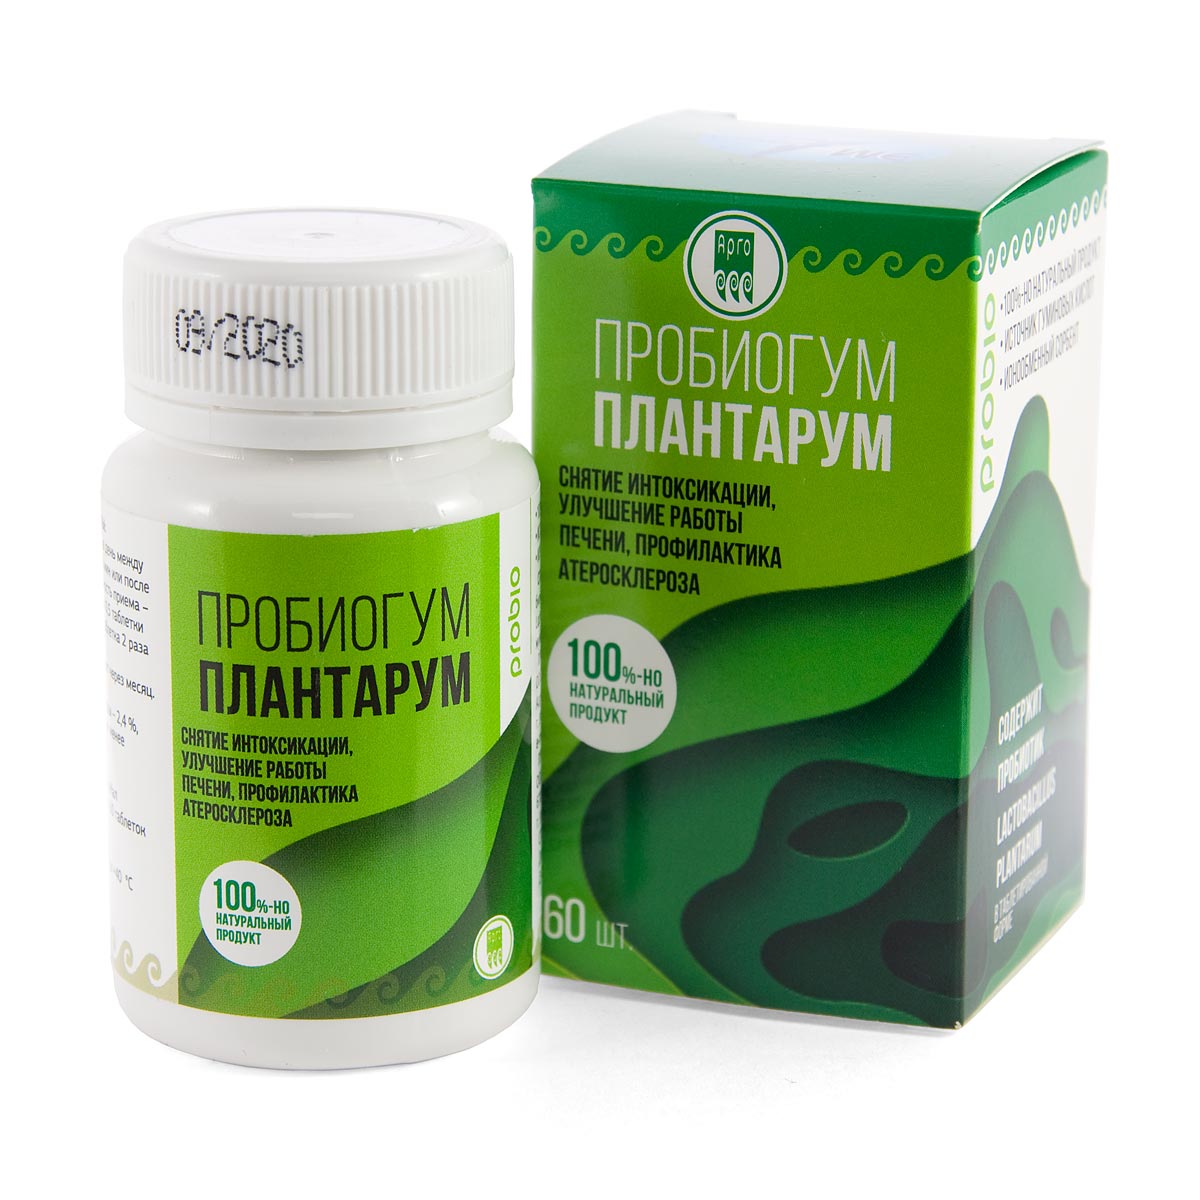 Пробиогум Плантарум, таблетки, 60 шт от Арго ЭМ-1